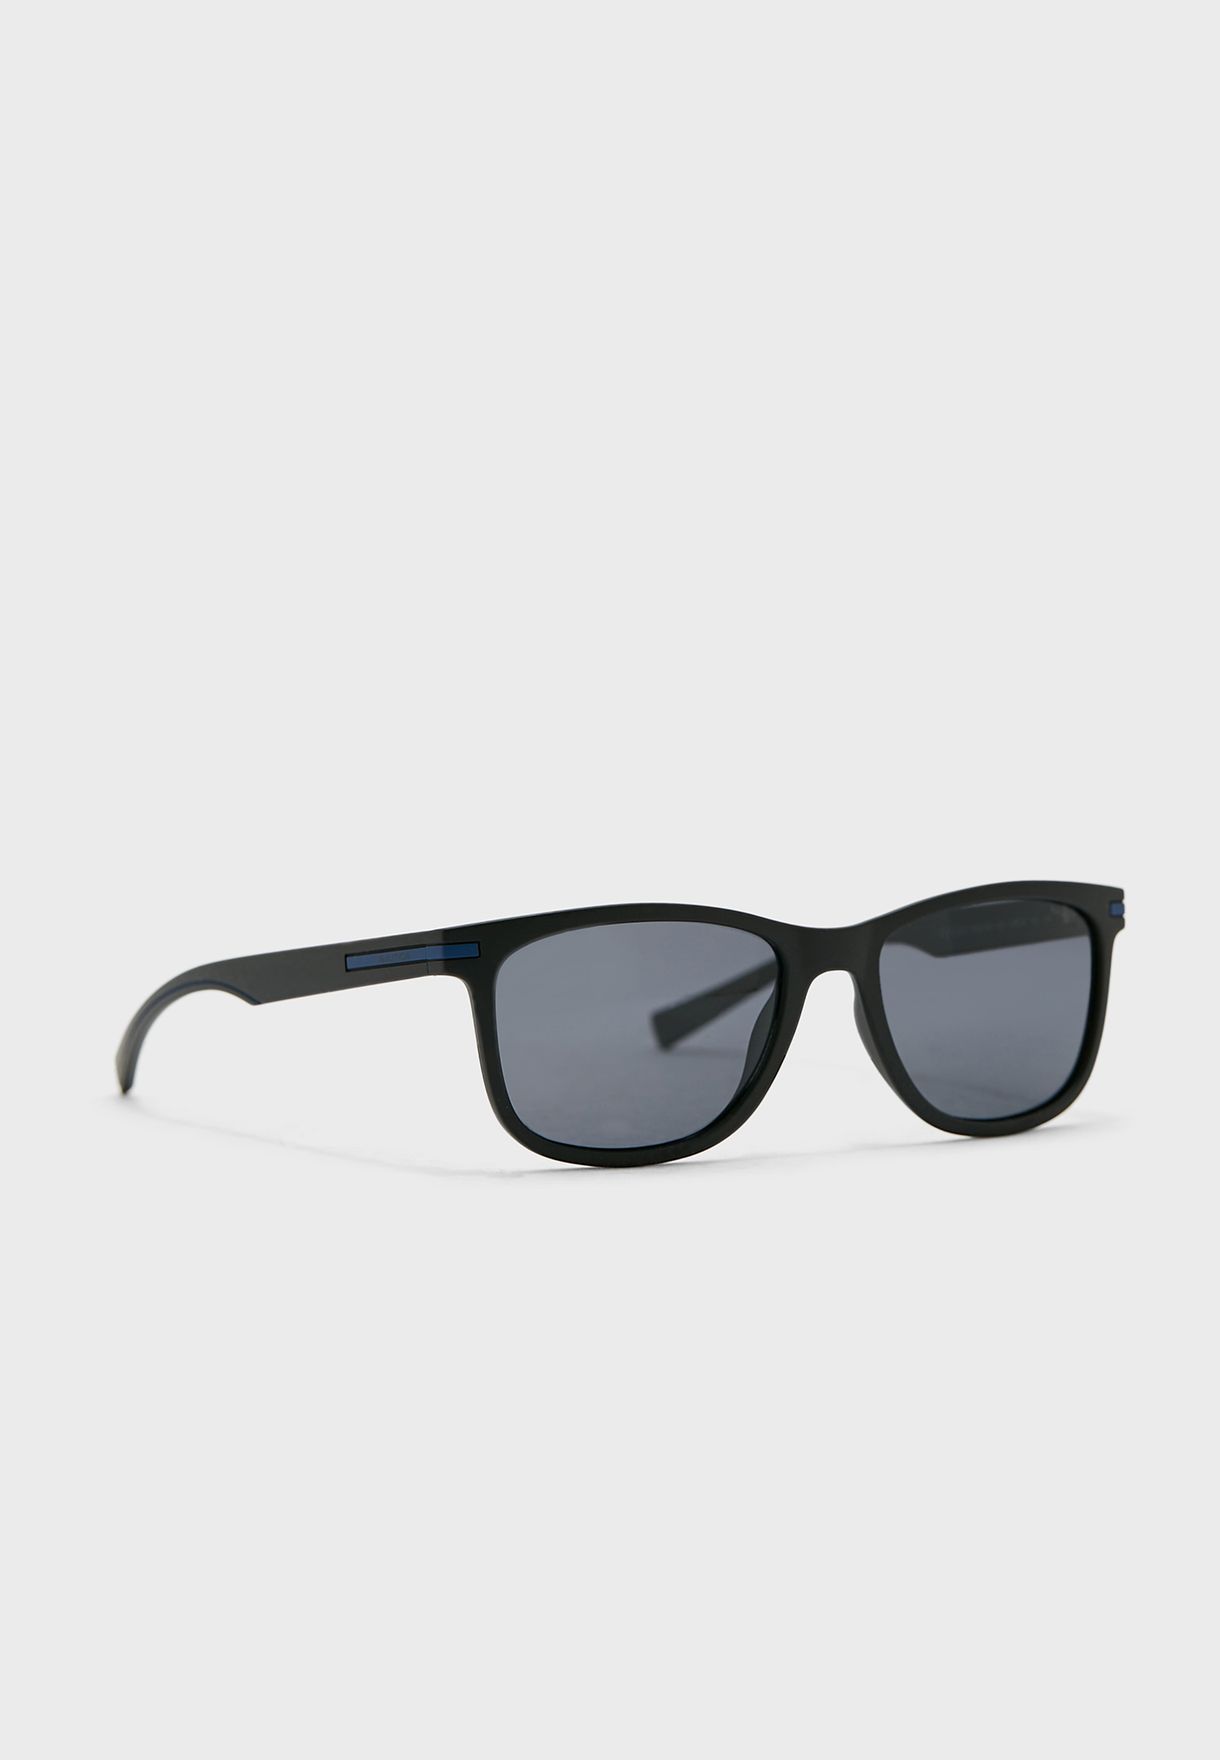 Wayfarers Sunglasses